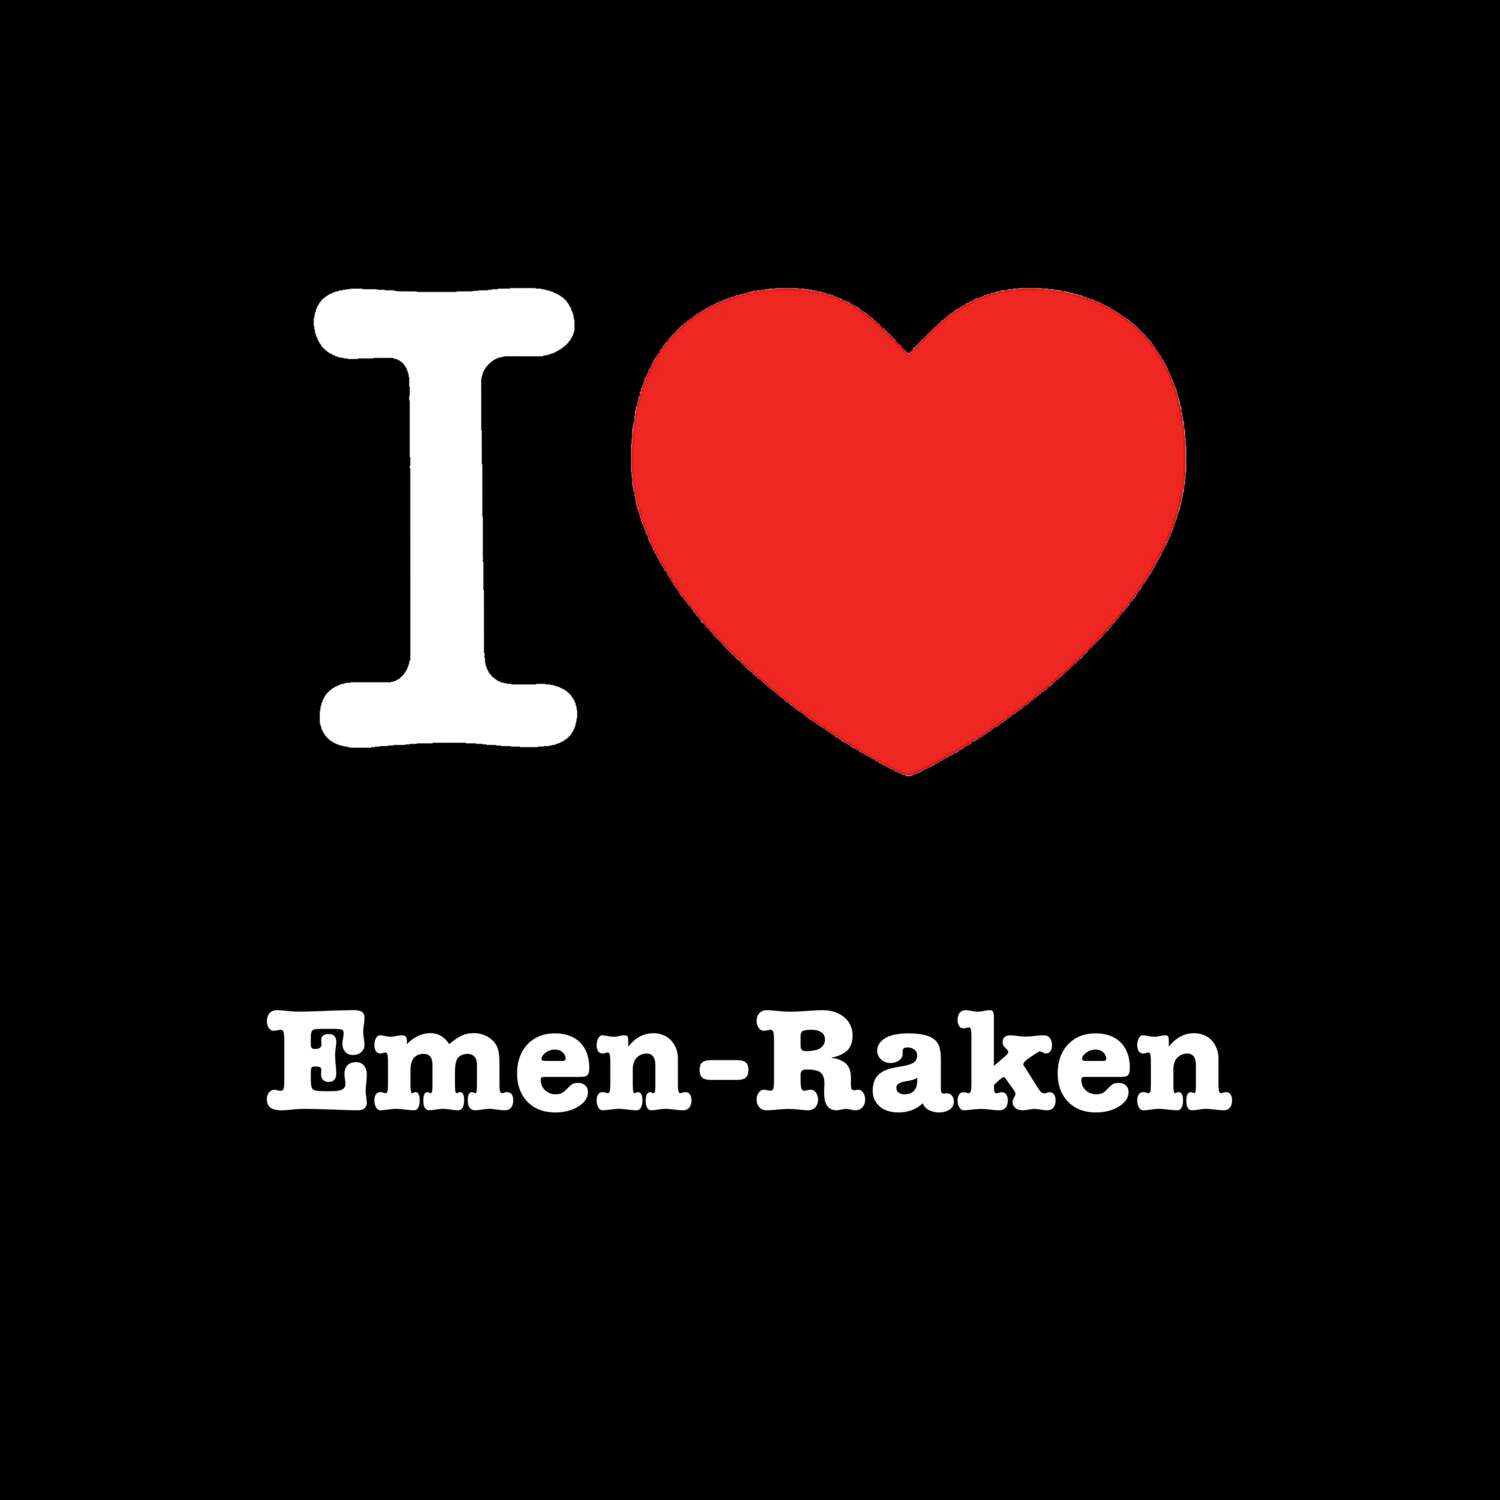 Emen-Raken T-Shirt »I love«